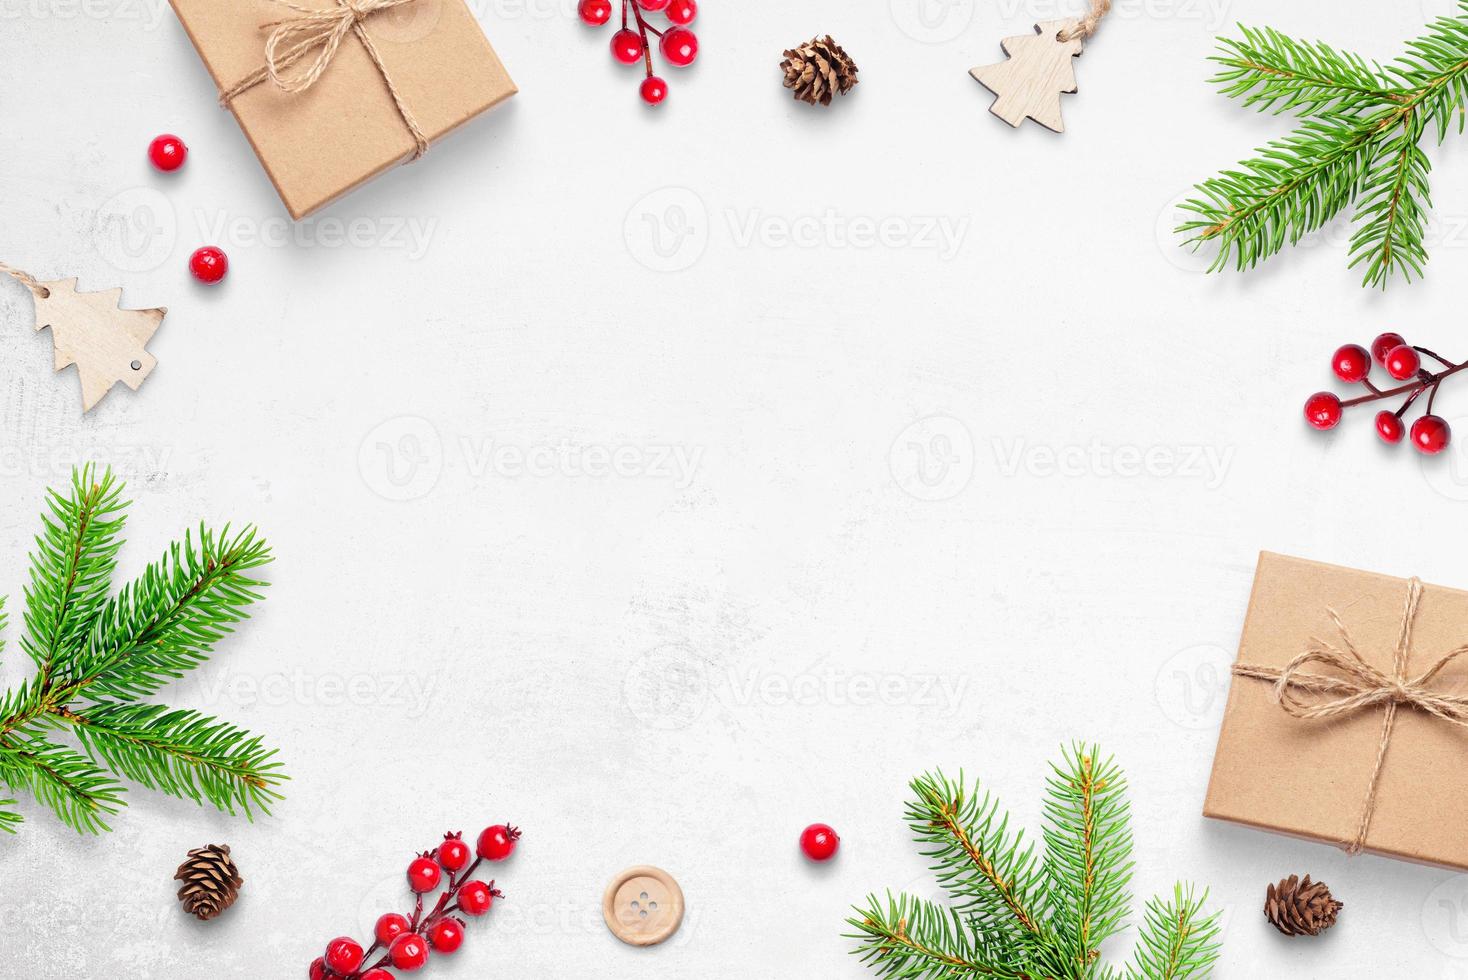 carino sfondo natalizio con regali, rami e decorazioni. spazio libero nel mezzo per il testo di saluto foto